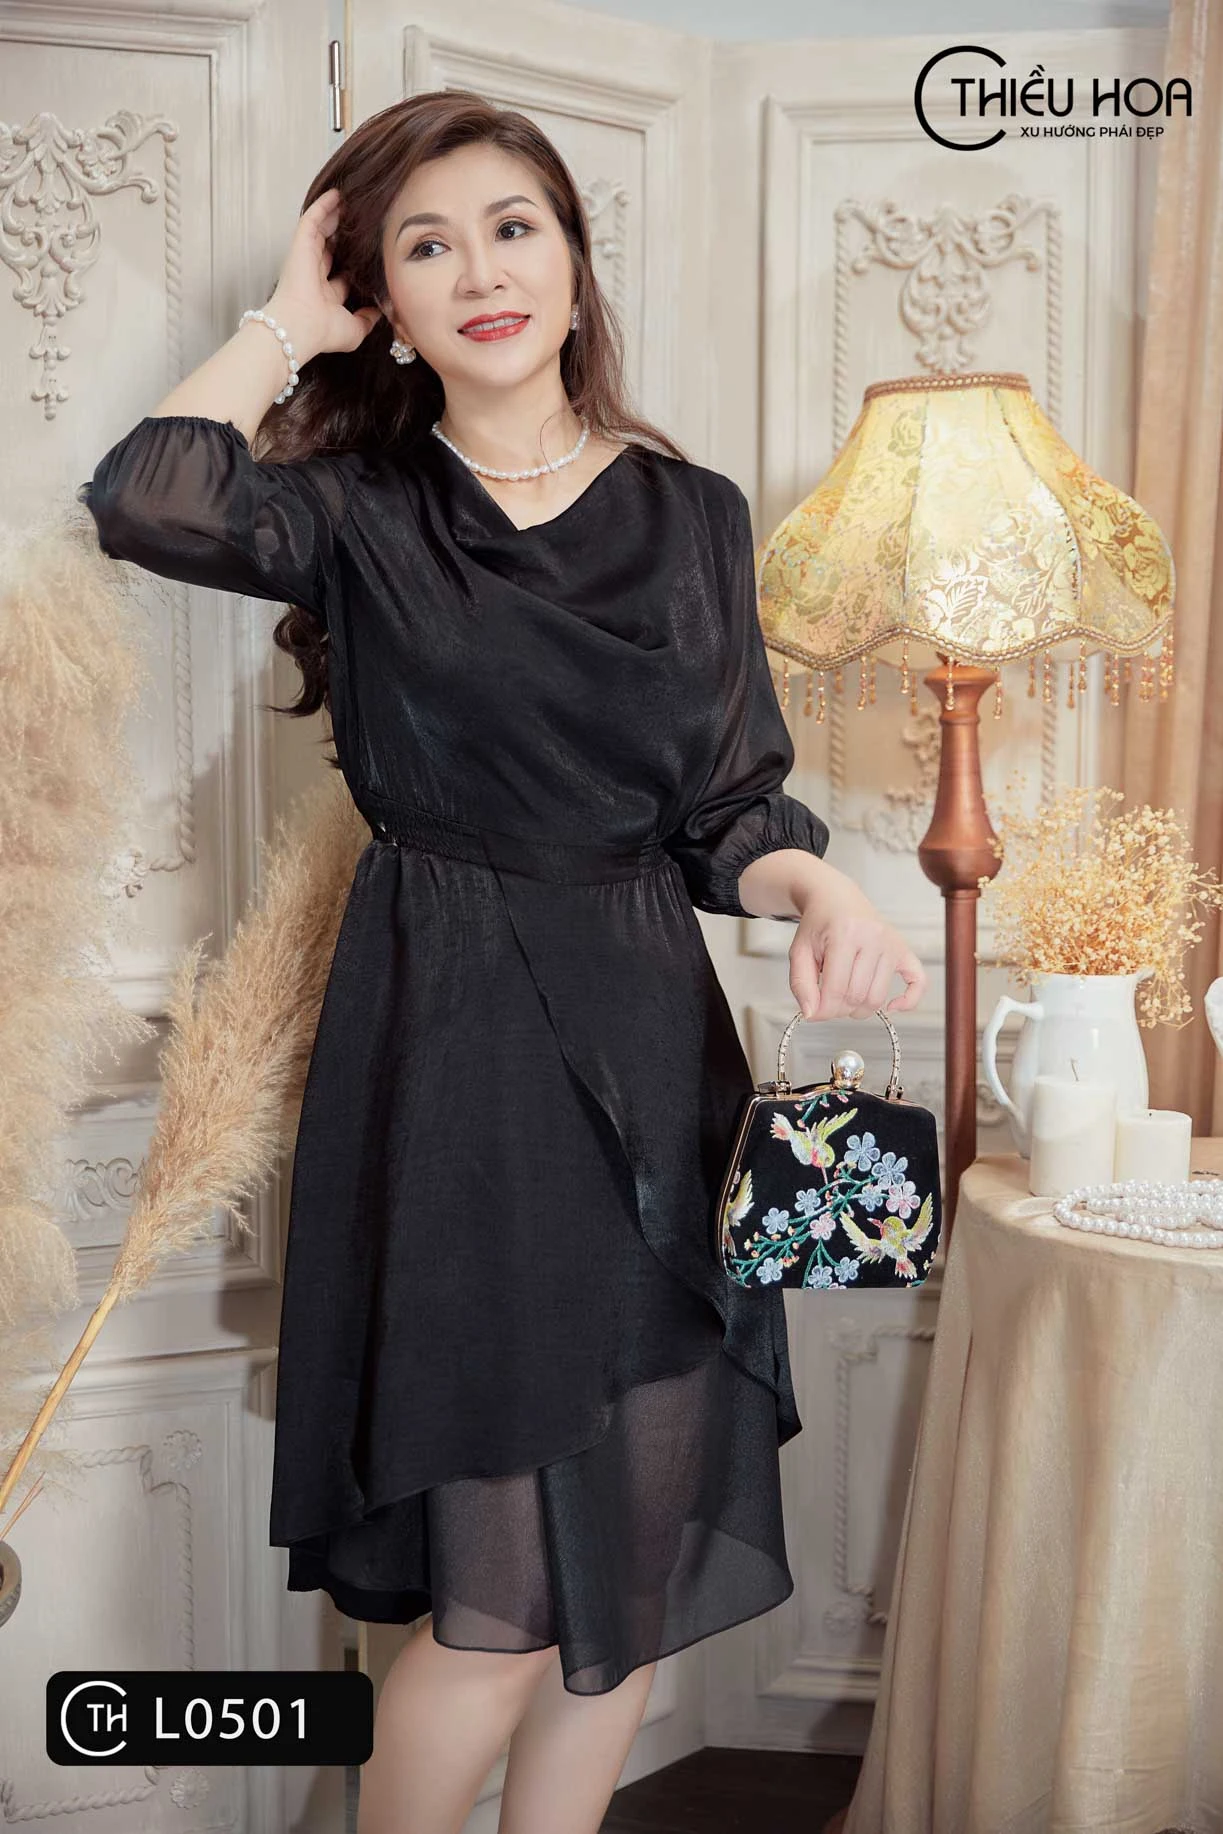 Thời Trang Đẹp Sài Gòn  Váy đầm cao cấp chuẩn đẹp vải dày dặn bao đẹp  bao tôn dáng  Kết bạn zalo 0336599637 nhé khách iu   Facebook